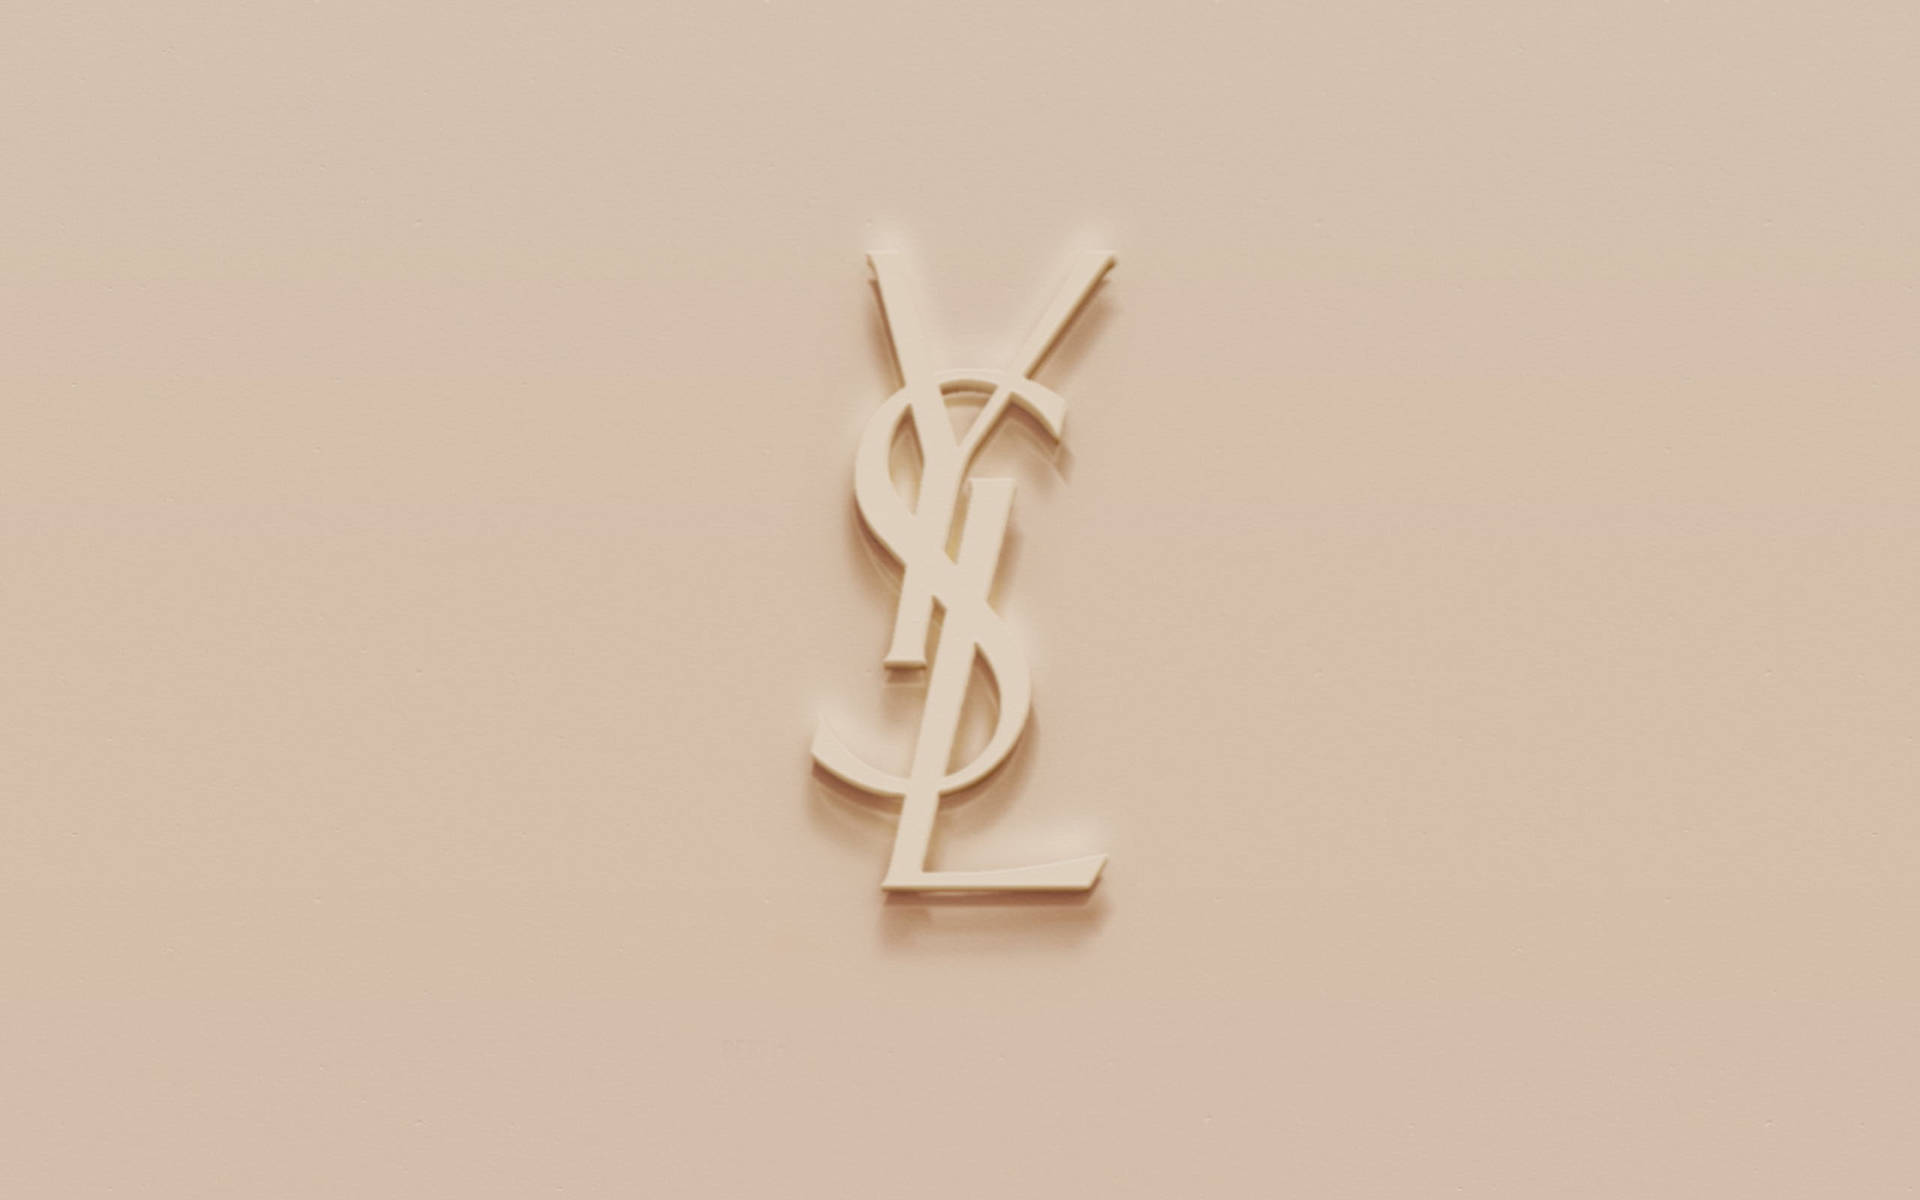 Ysl Logo Beige Art Background